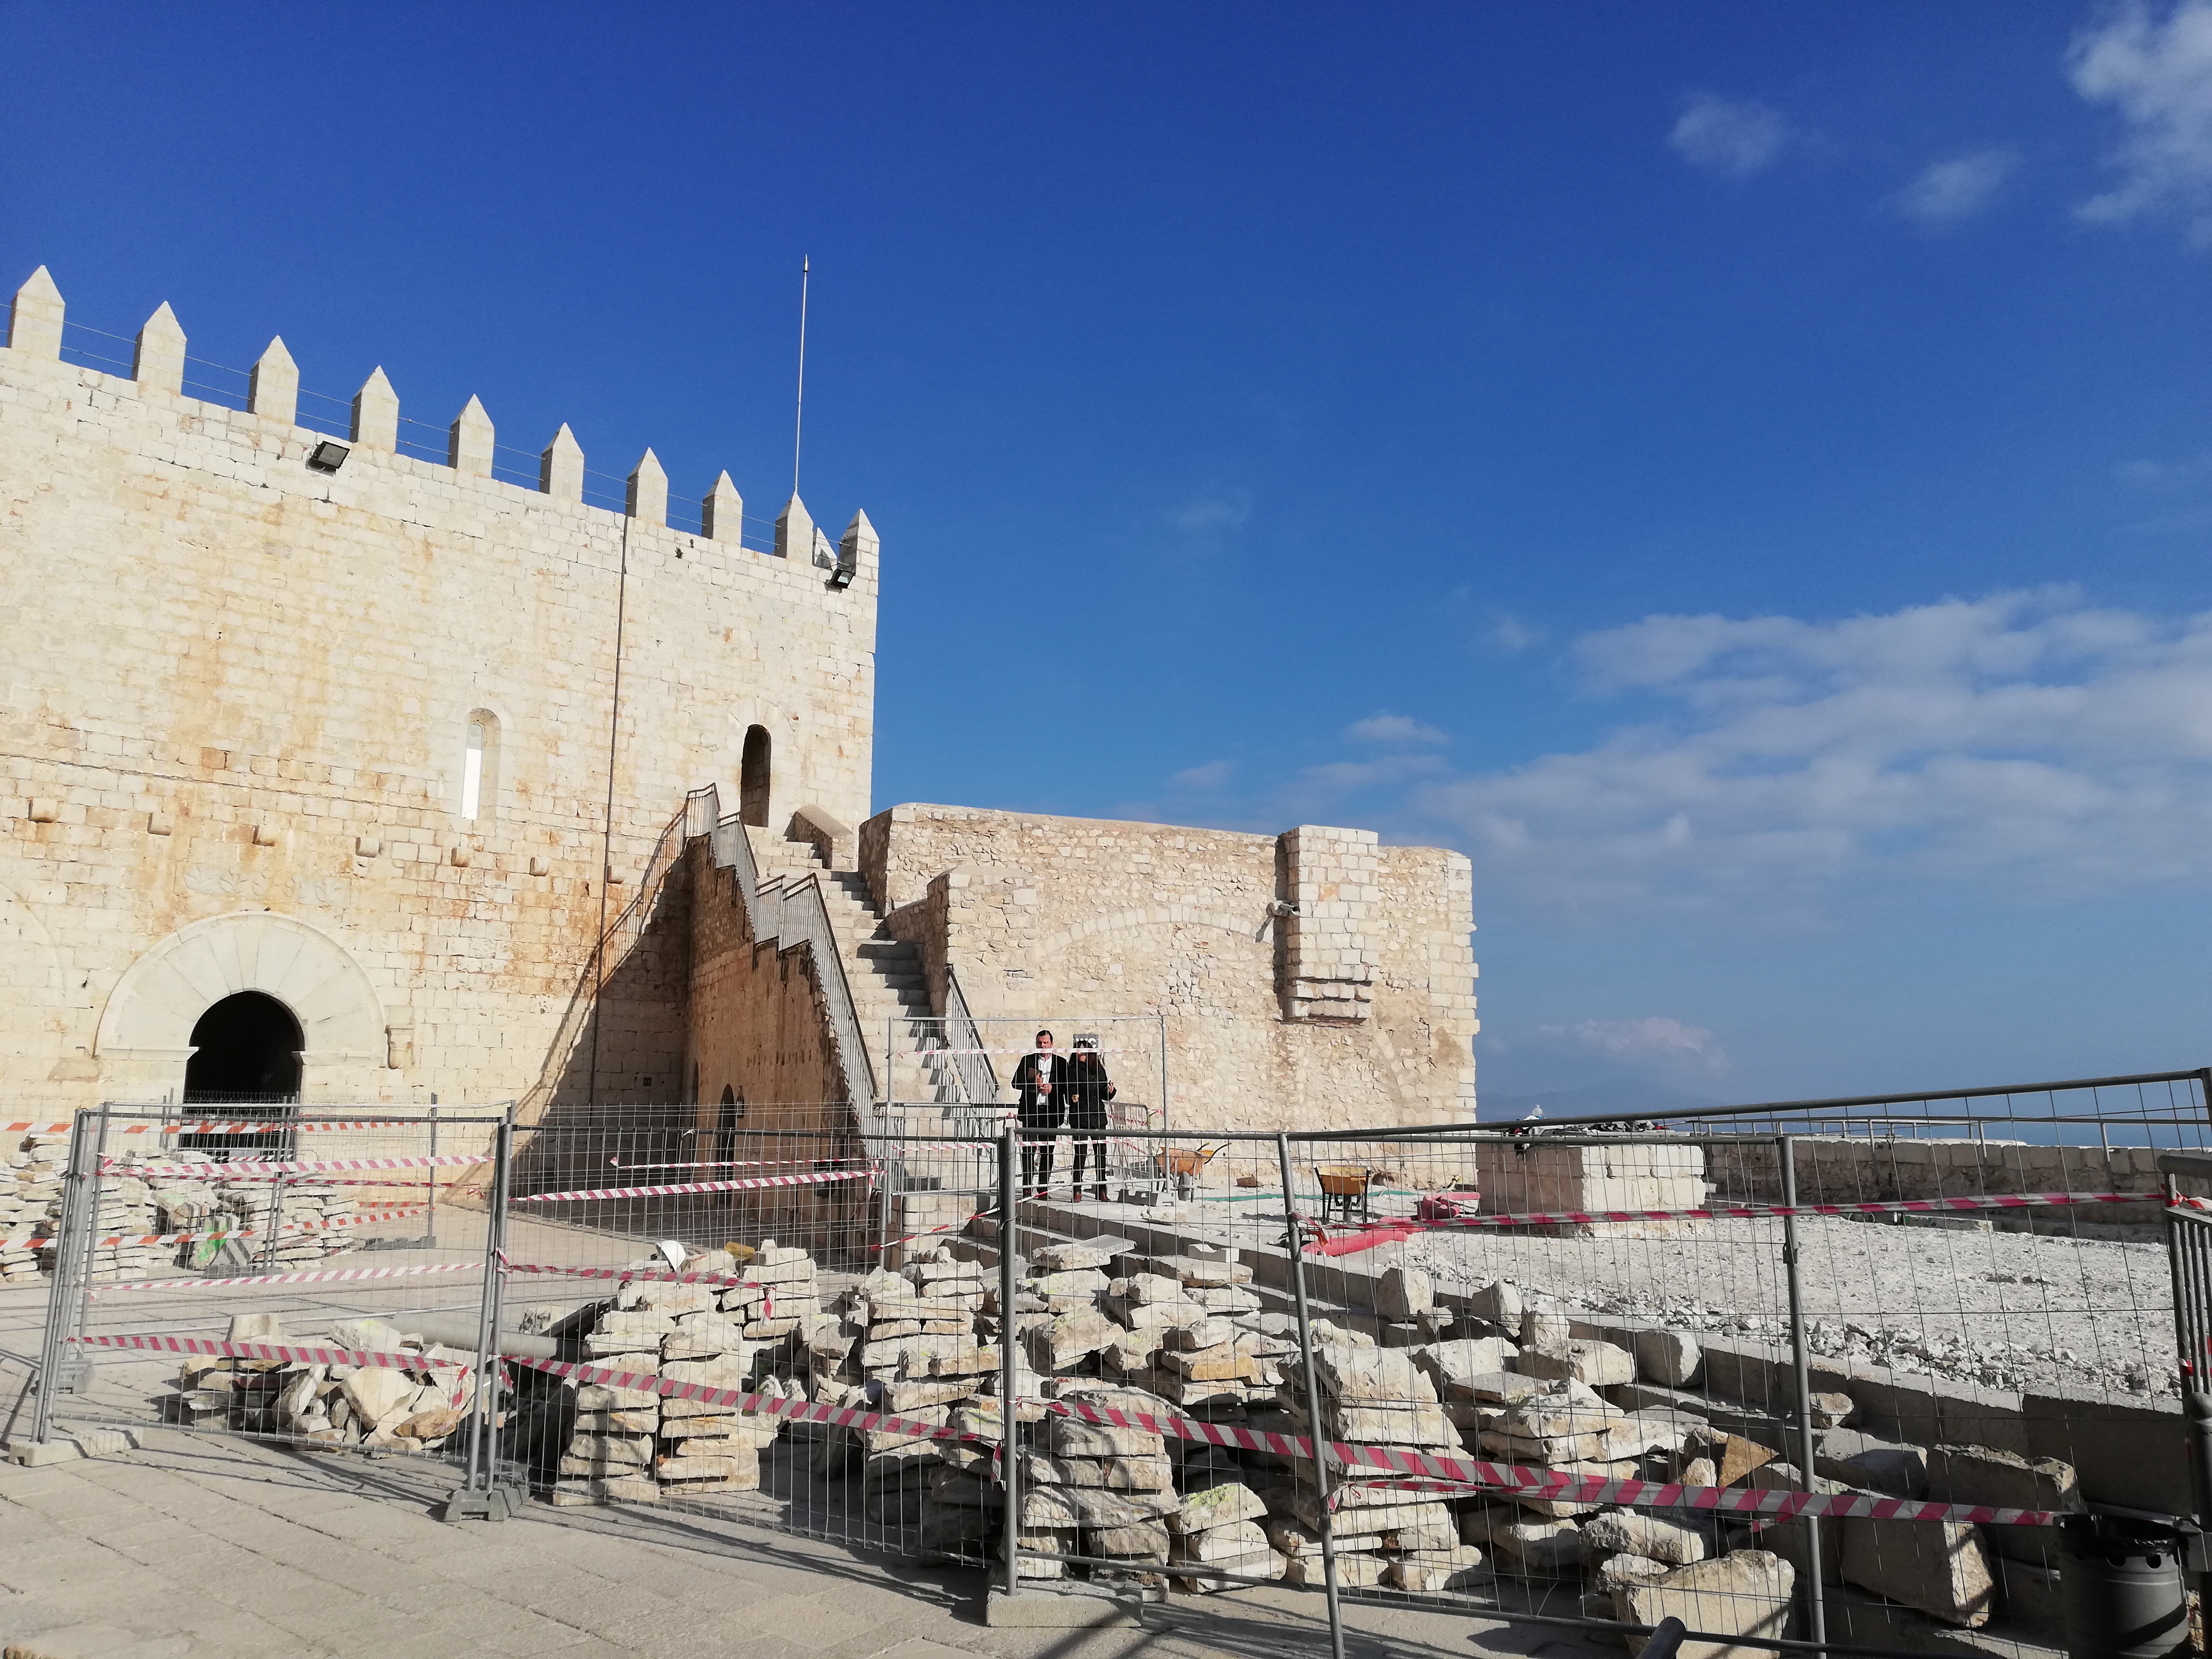 La Diputación ultima la restauración del Castillo de Peñíscola para convertirlo en el más visitable de España